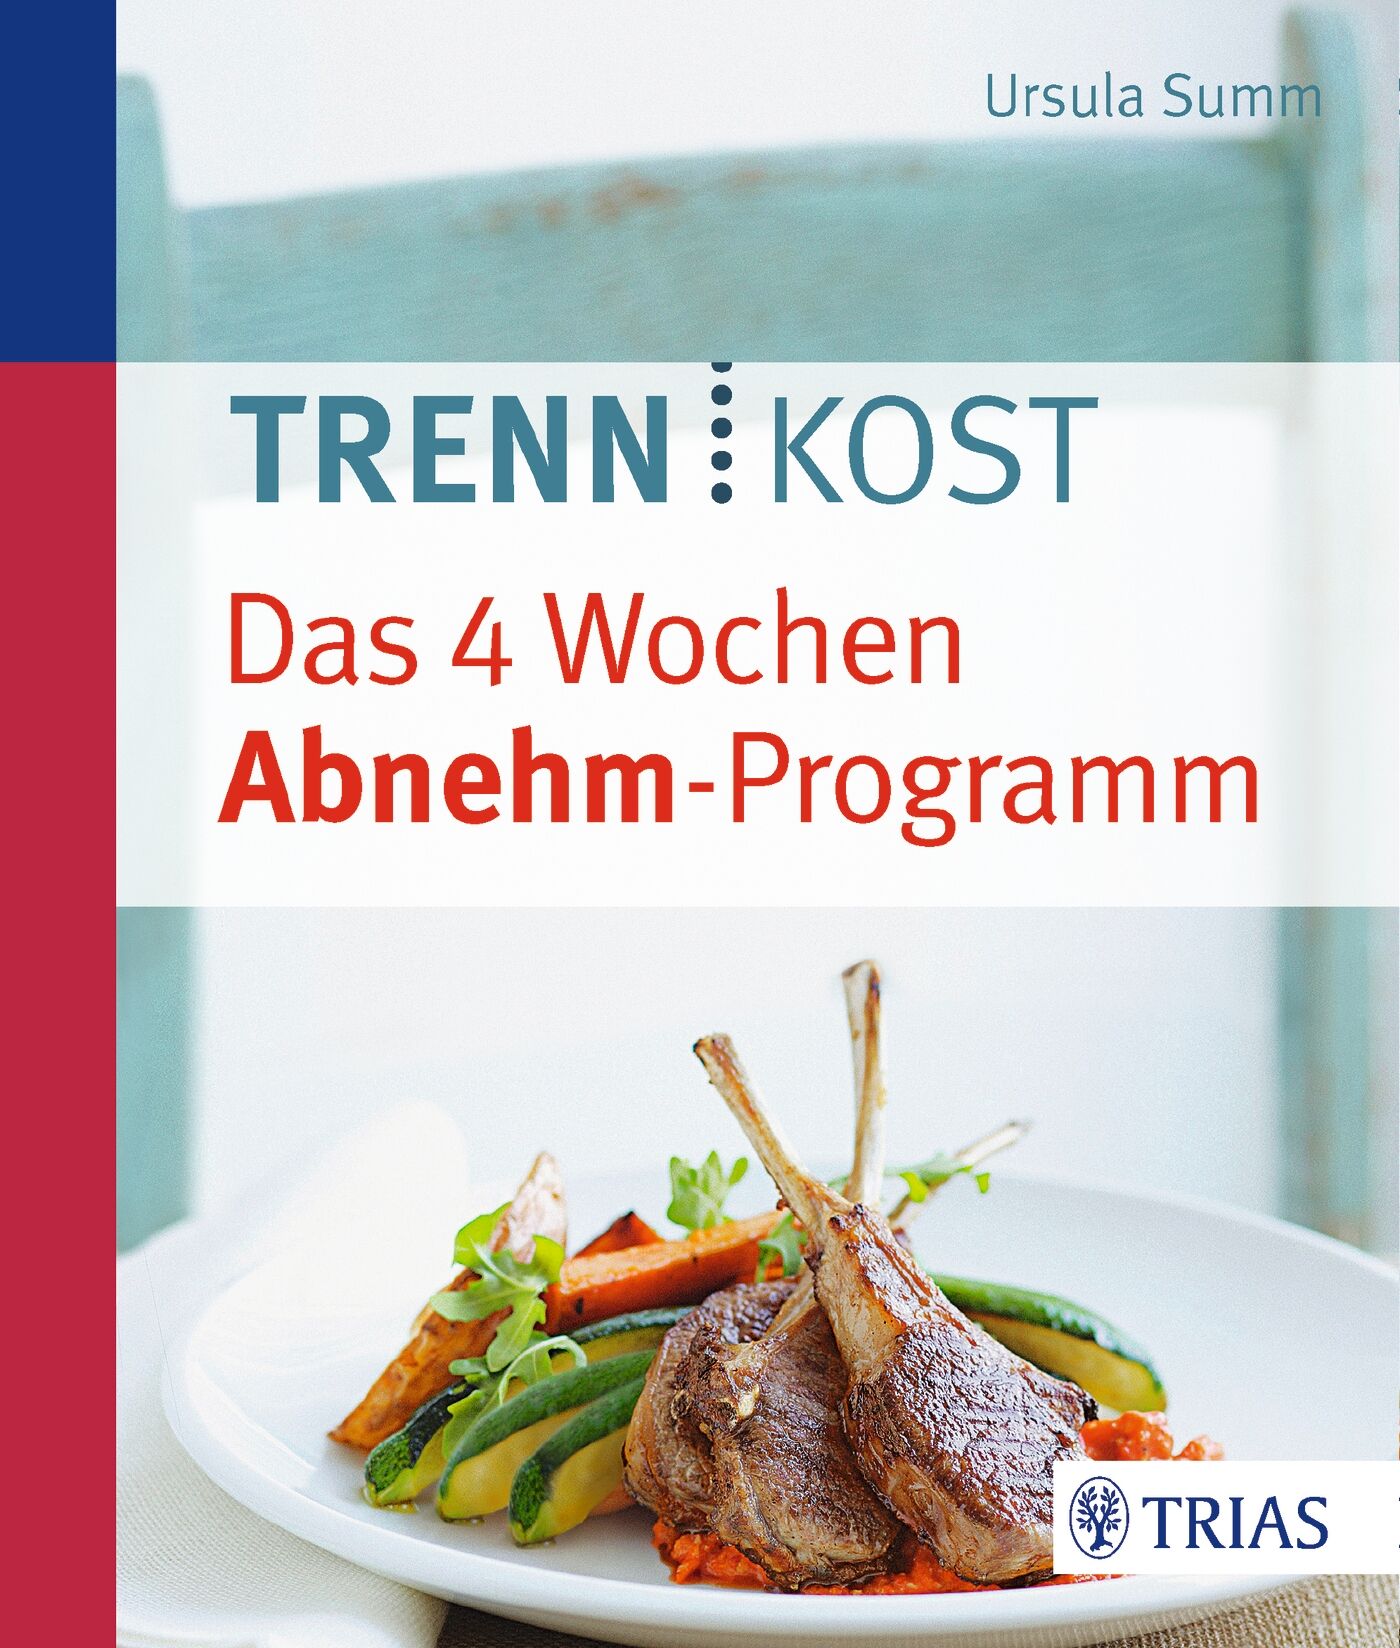 Trennkost - Das 4 Wochen Abnehm-Programm, 9783432101286